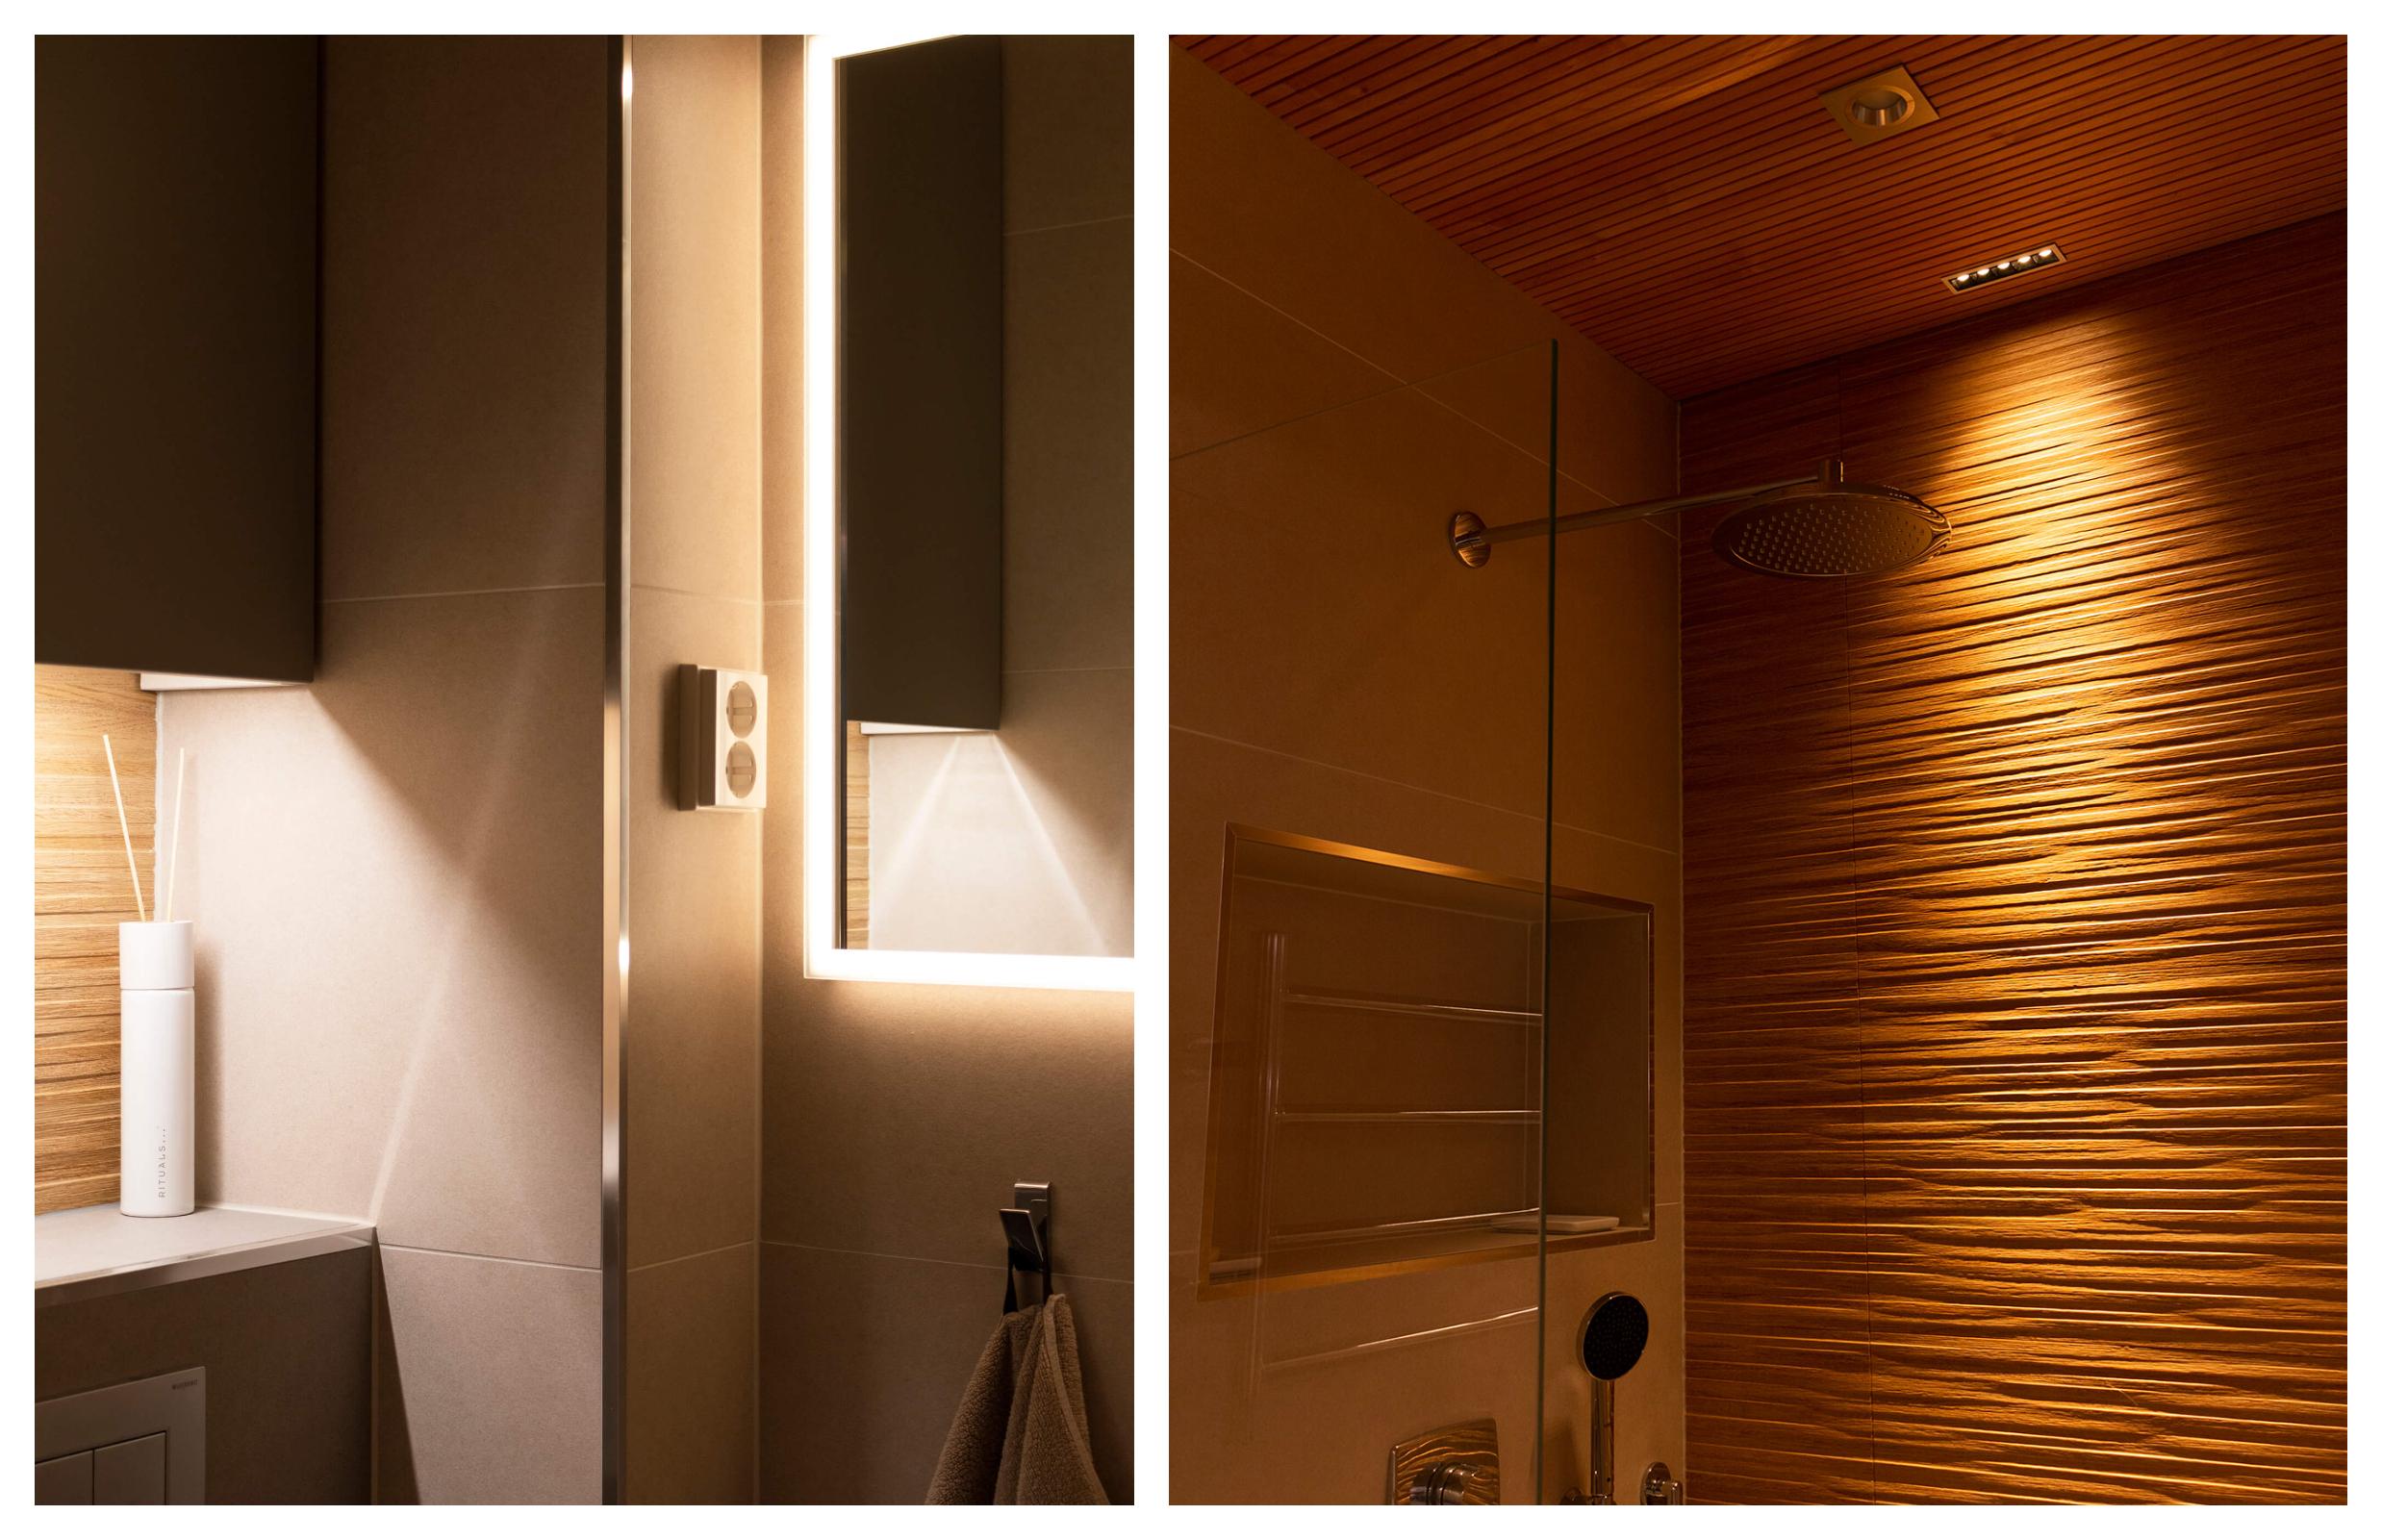 Kylpyhuoneiden valaistus on toteutettu monitasoiseksi, jotta saadaan tarvittaessa myös rauhallinen tunnelma. Suihkuseinän kaunisstruktuurinen puulaatta tulee hienosti esiin pehmeässä valossa.